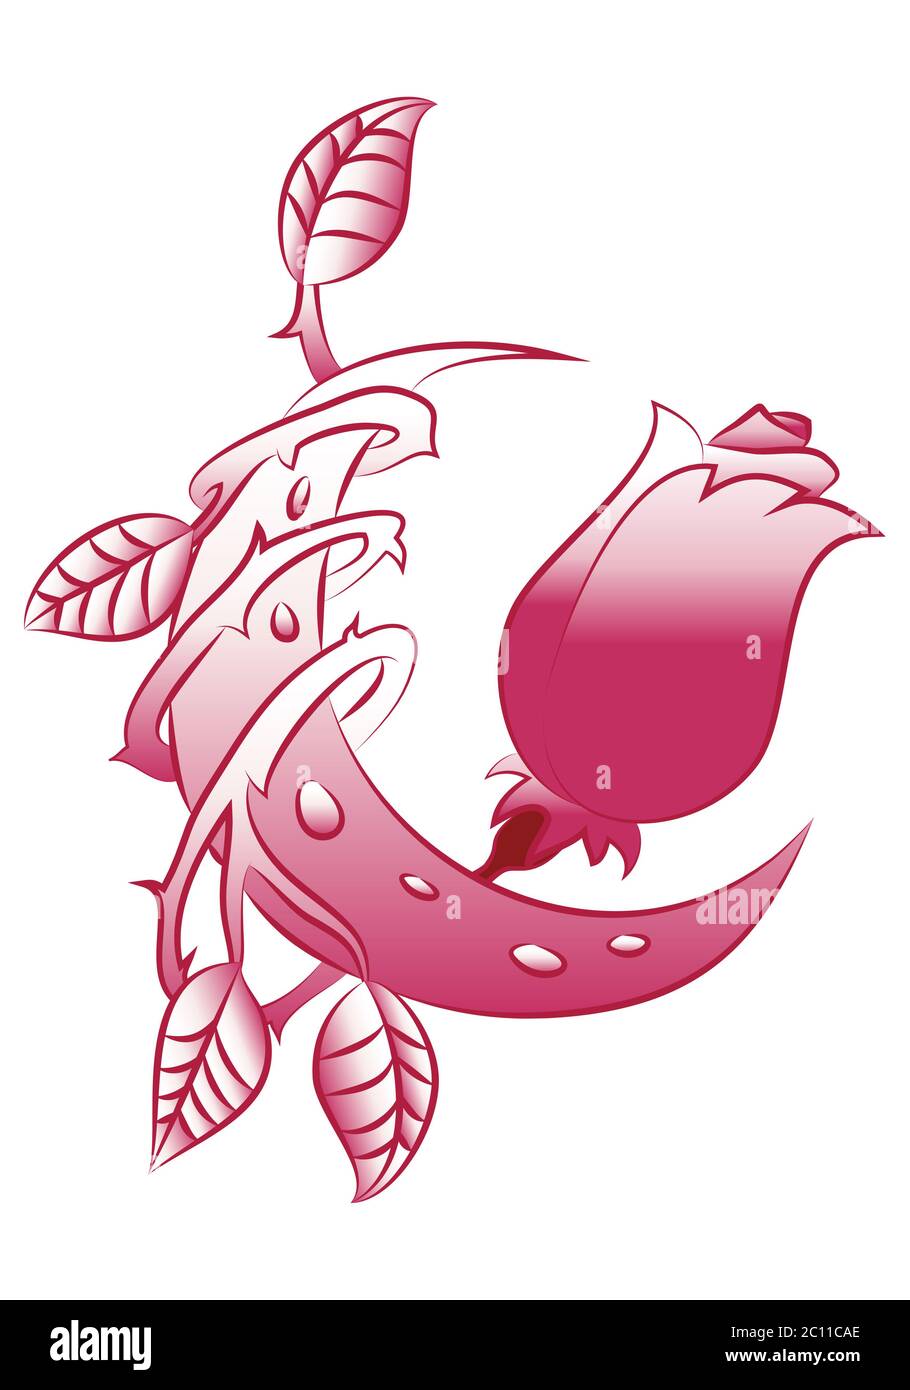 illustration de l'insigne roses fleurs avec croissant de lune tatouage art tribal sur fond blanc isolé Banque D'Images